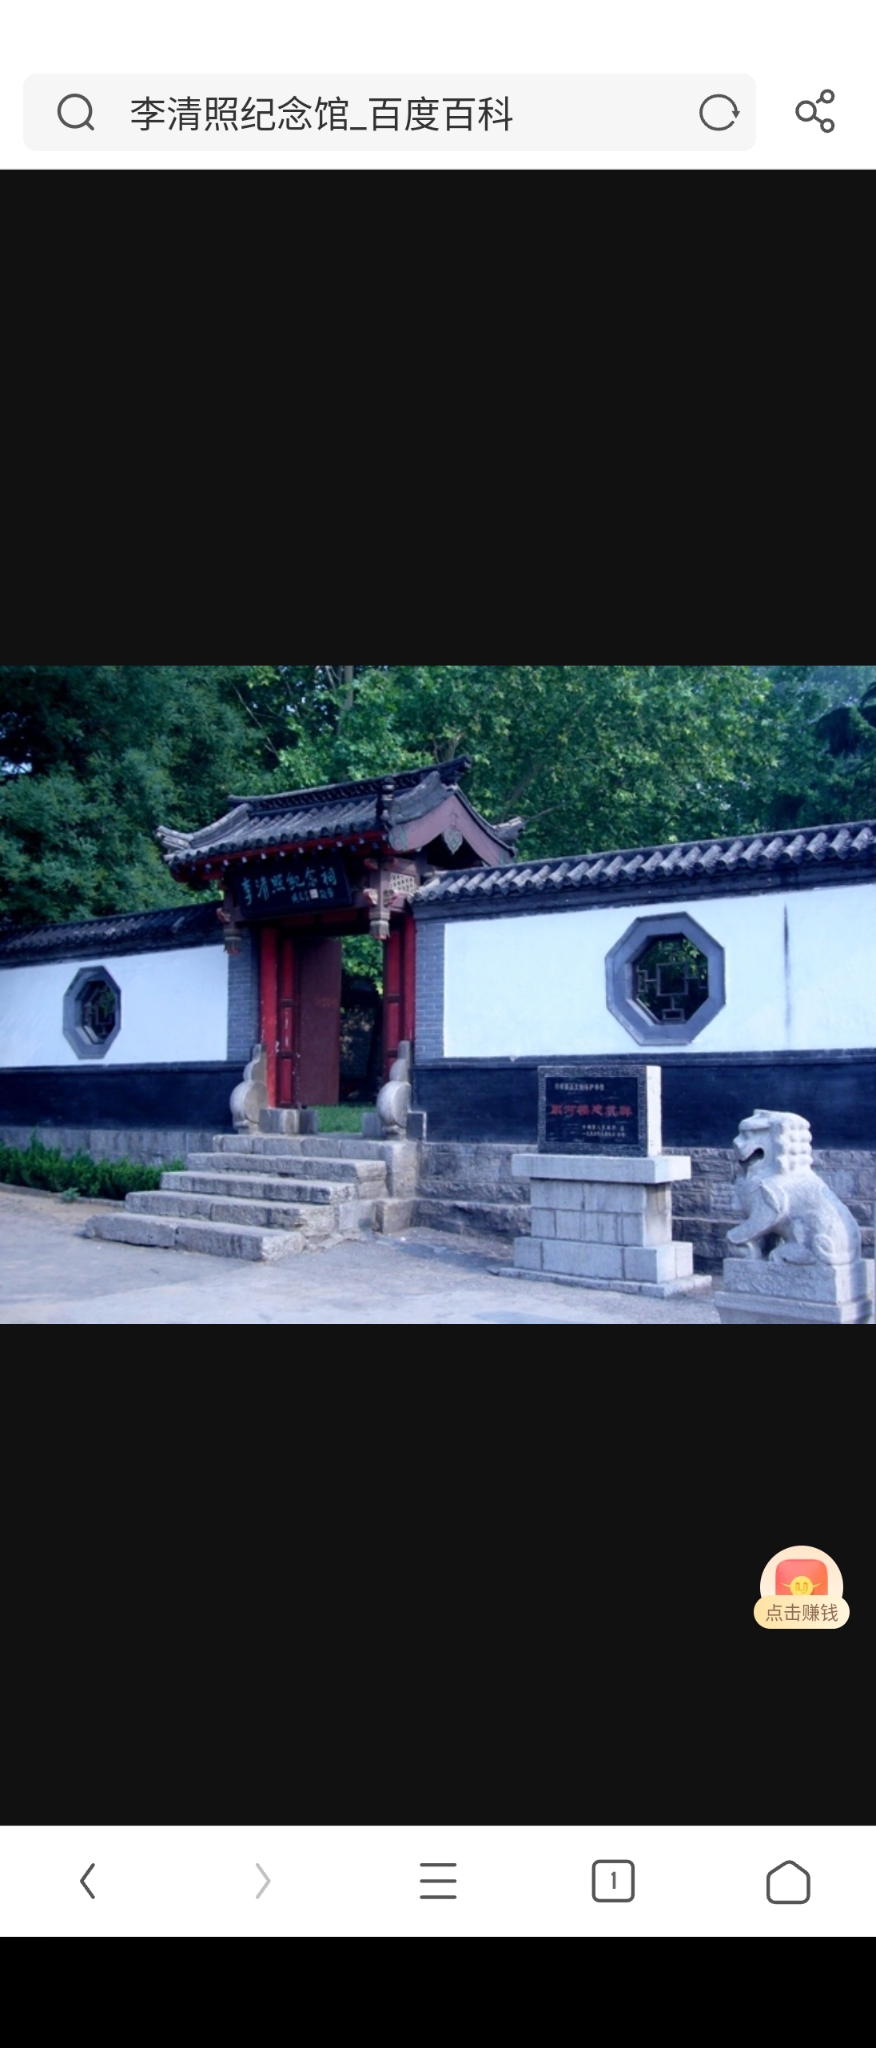 青州的范公亭公园内，进范公亭公园，过永济桥，就到了青州李清照纪念祠。纪念祠内有一处青砖灰瓦、砖木结构